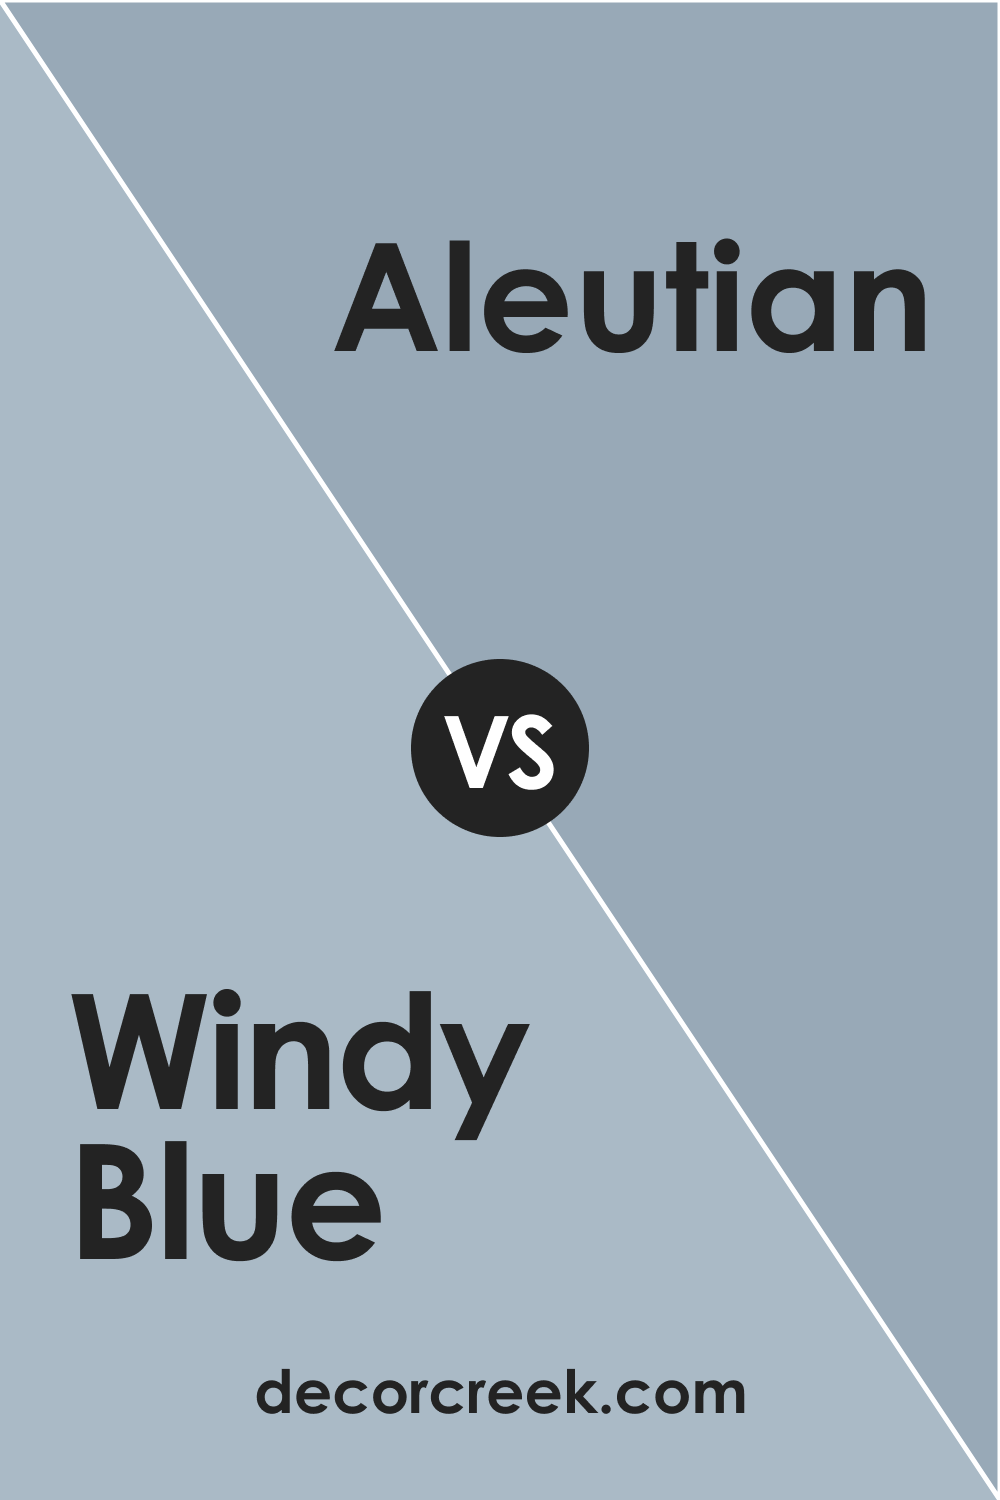 SW Windy Blue vs Aleutian